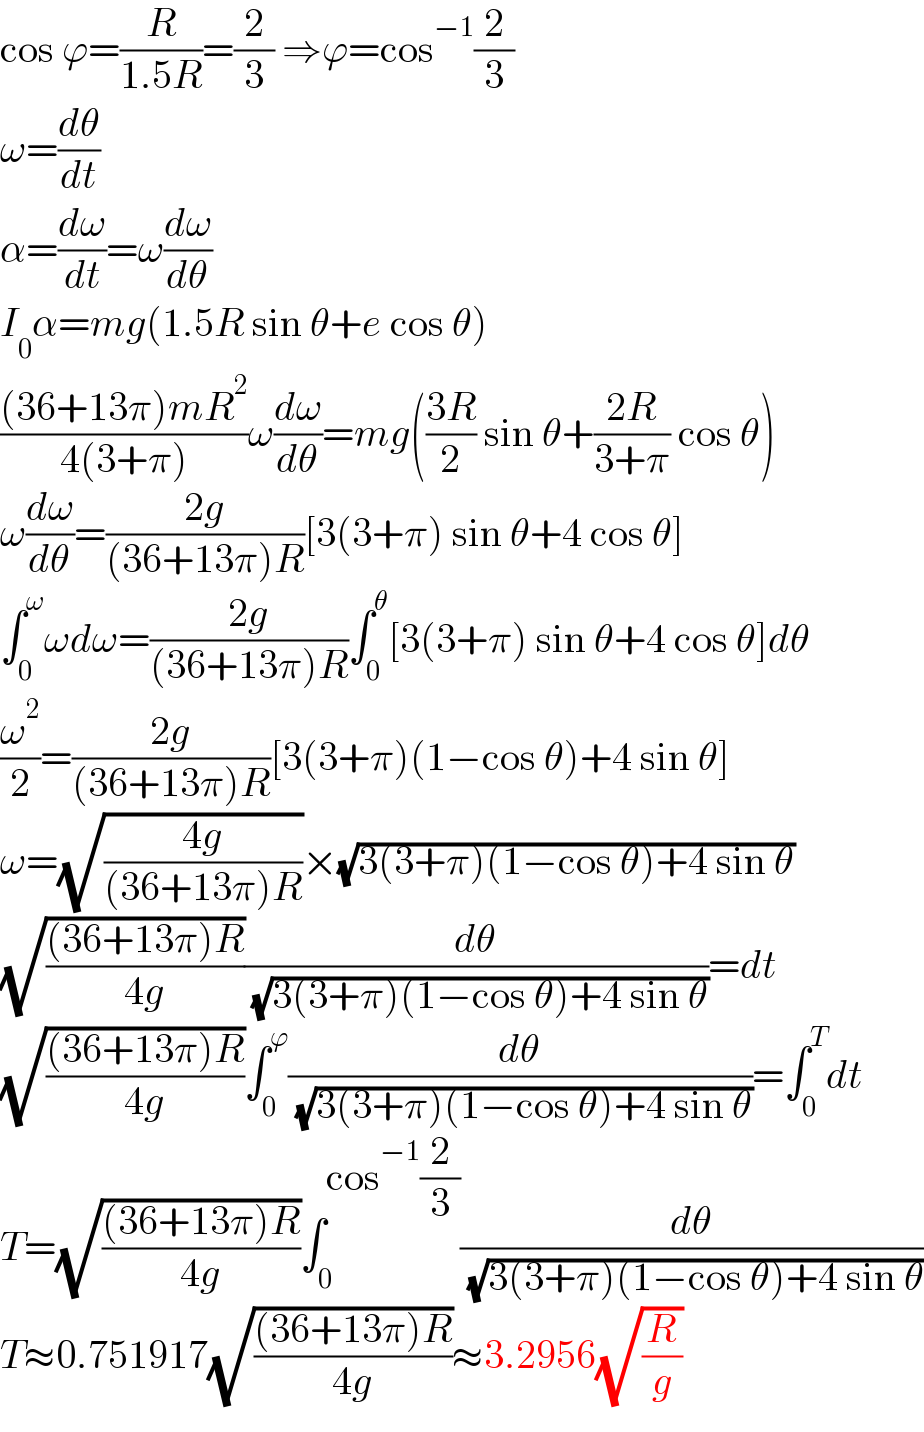 cos ϕ=(R/(1.5R))=(2/3) ⇒ϕ=cos^(−1) (2/3)  ω=(dθ/dt)  α=(dω/dt)=ω(dω/dθ)  I_0 α=mg(1.5R sin θ+e cos θ)  (((36+13π)mR^2 )/(4(3+π)))ω(dω/dθ)=mg(((3R)/2) sin θ+((2R)/(3+π)) cos θ)  ω(dω/dθ)=((2g)/((36+13π)R))[3(3+π) sin θ+4 cos θ]  ∫_0 ^ω ωdω=((2g)/((36+13π)R))∫_0 ^θ [3(3+π) sin θ+4 cos θ]dθ  (ω^2 /2)=((2g)/((36+13π)R))[3(3+π)(1−cos θ)+4 sin θ]  ω=(√((4g)/((36+13π)R)))×(√(3(3+π)(1−cos θ)+4 sin θ))  (√(((36+13π)R)/(4g)))(dθ/( (√(3(3+π)(1−cos θ)+4 sin θ))))=dt  (√(((36+13π)R)/(4g)))∫_0 ^ϕ (dθ/( (√(3(3+π)(1−cos θ)+4 sin θ))))=∫_0 ^T dt  T=(√(((36+13π)R)/(4g)))∫_0 ^(cos^(−1) (2/3)) (dθ/( (√(3(3+π)(1−cos θ)+4 sin θ))))  T≈0.751917(√(((36+13π)R)/(4g)))≈3.2956(√(R/g))  